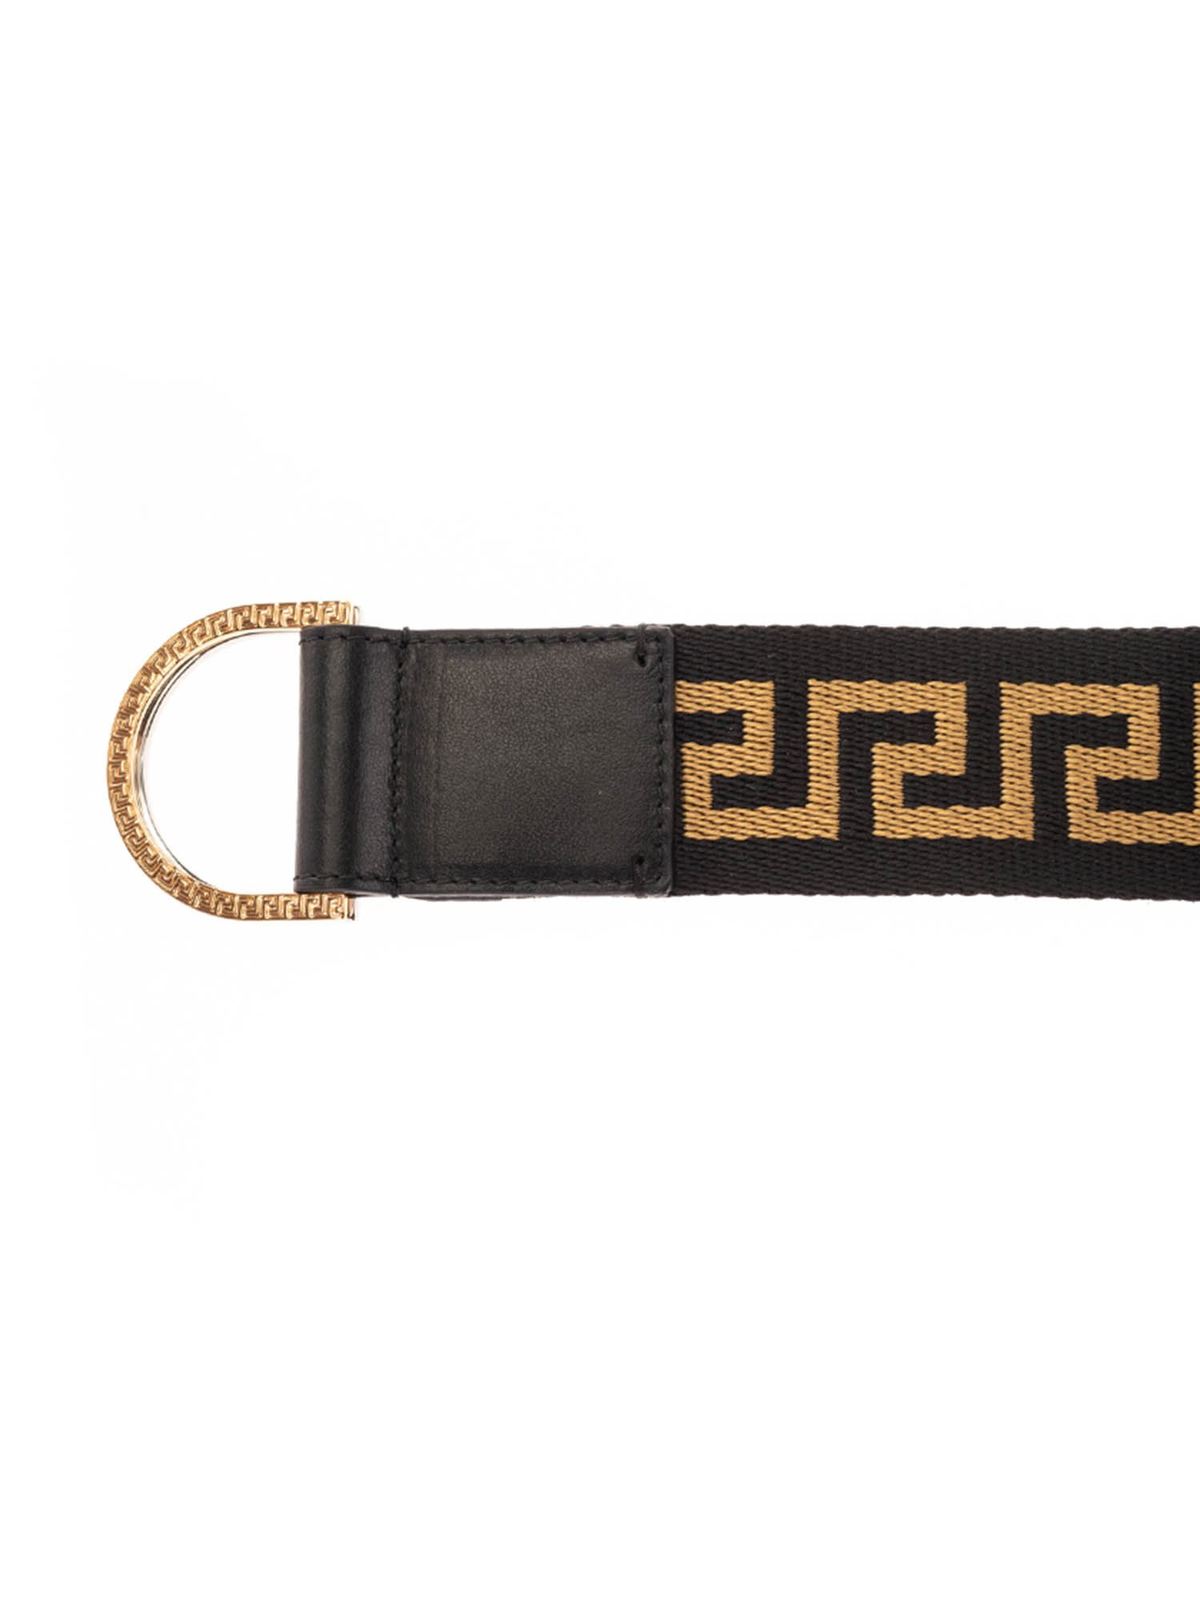 versace greca belt